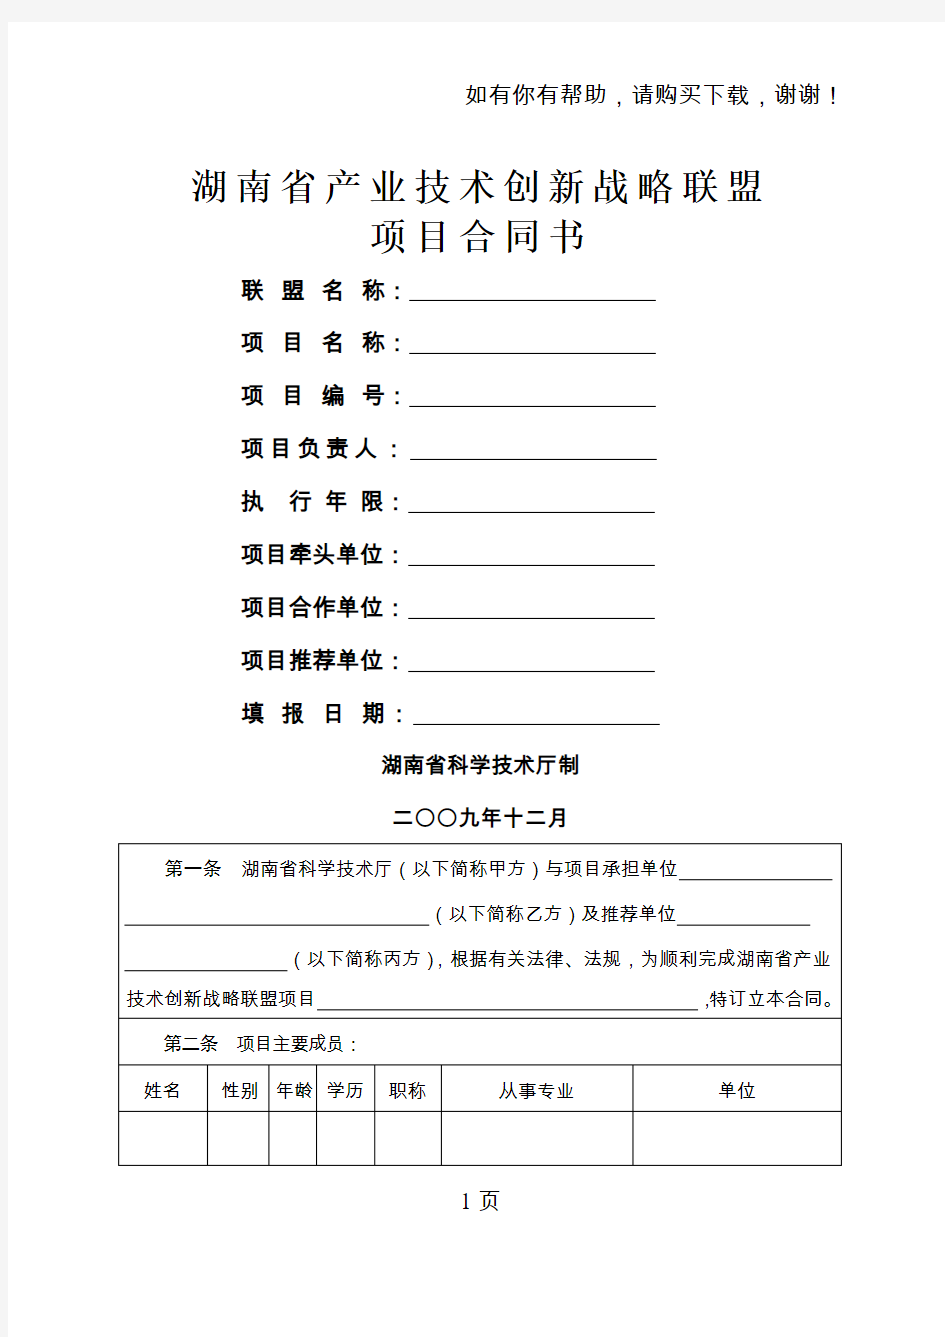 湖南省产业技术创新战略联盟